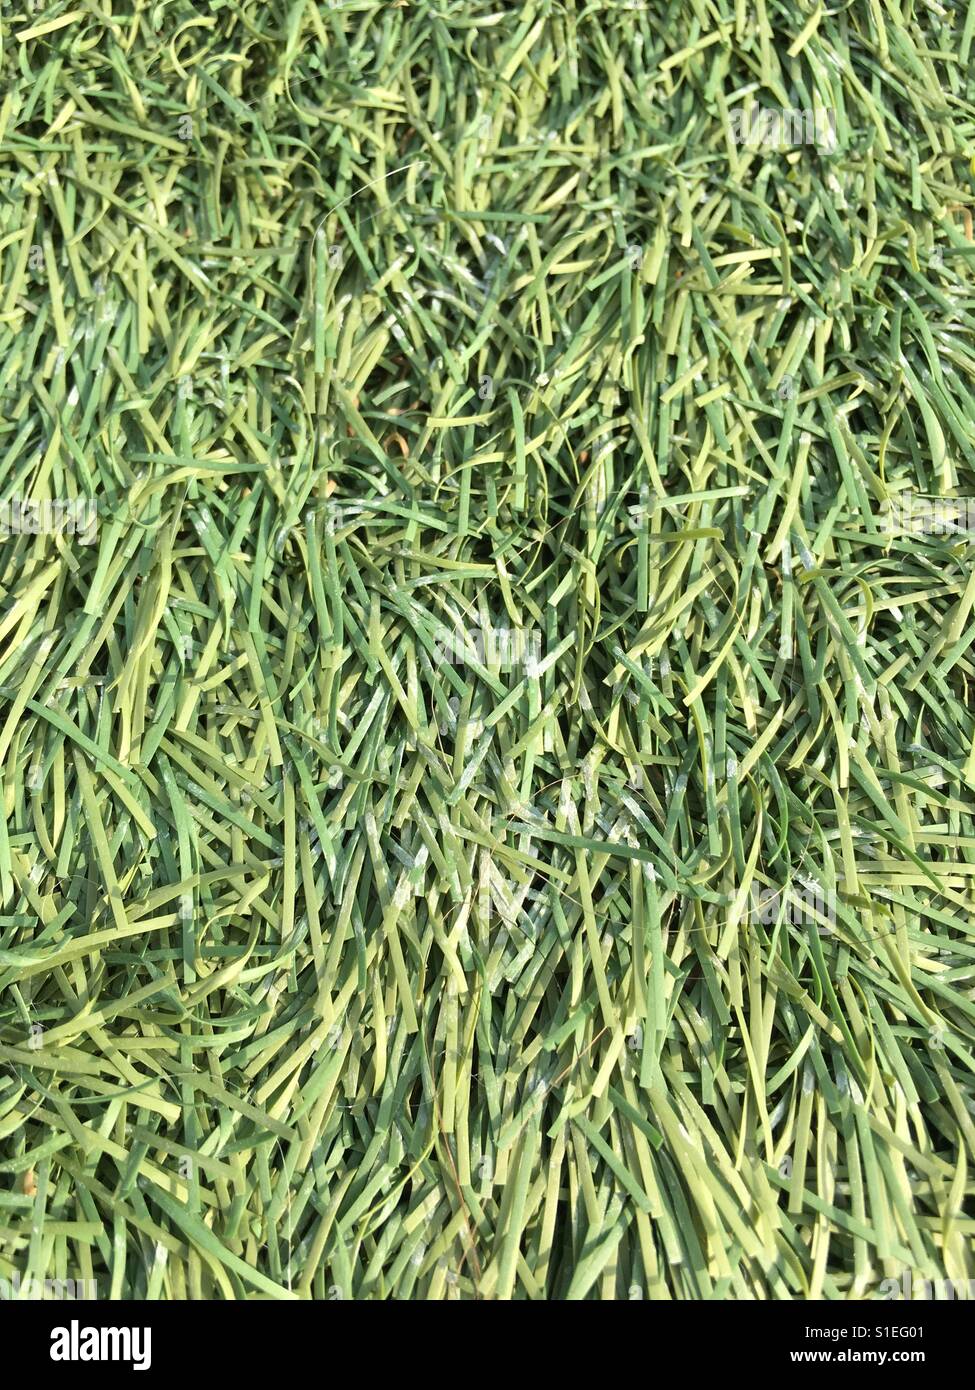 Fake grass texture. Stock Photo